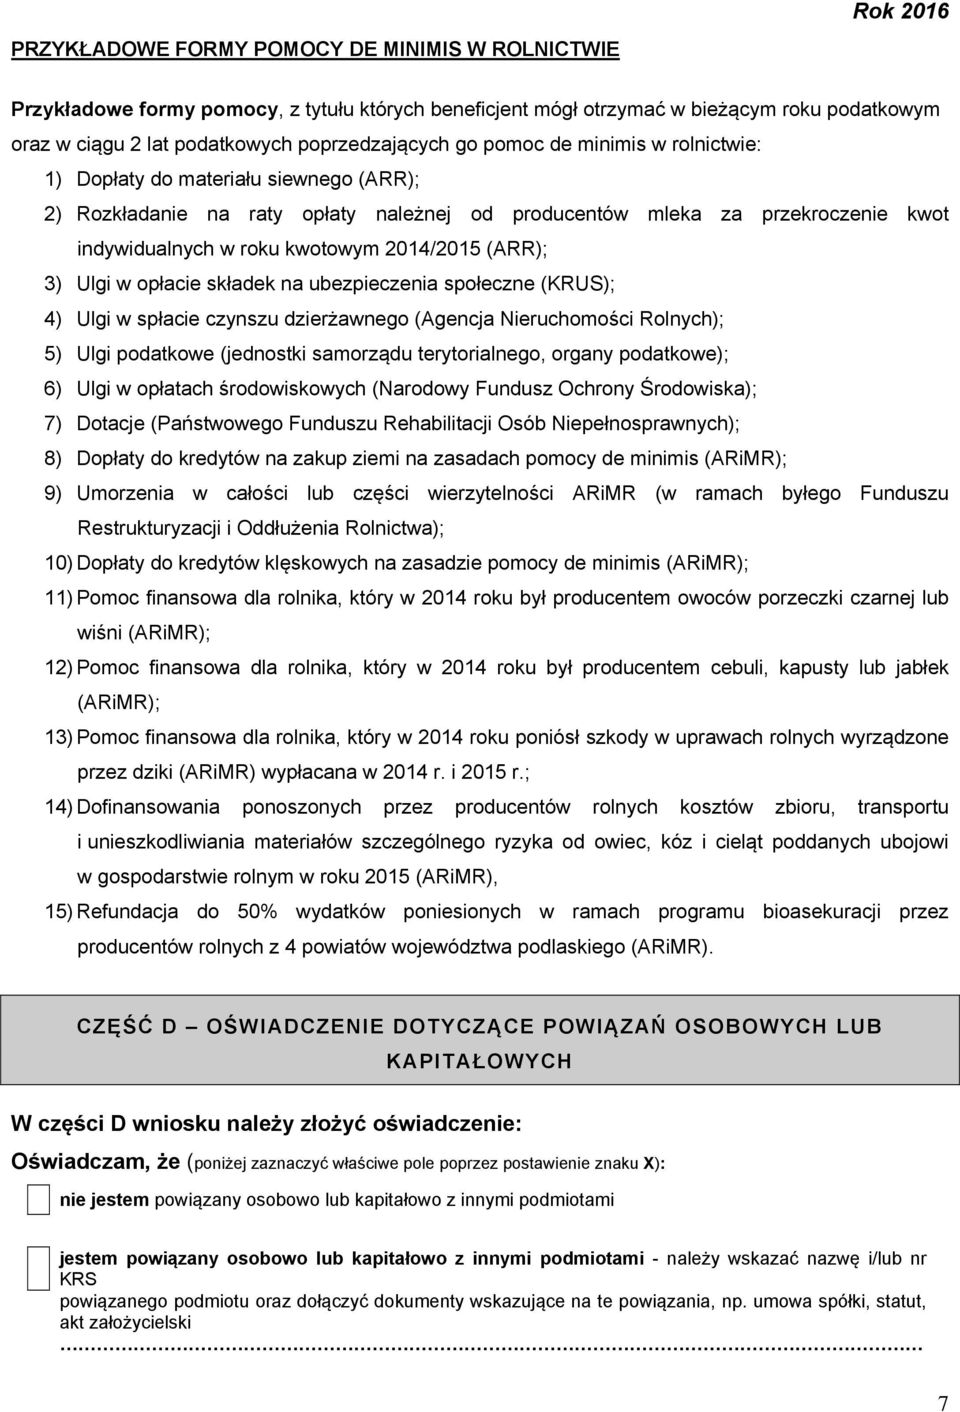 kwotowym 2014/2015 (ARR); 3) Ulgi w opłacie składek na ubezpieczenia społeczne (KRUS); 4) Ulgi w spłacie czynszu dzierżawnego (Agencja Nieruchomości Rolnych); 5) Ulgi podatkowe (jednostki samorządu